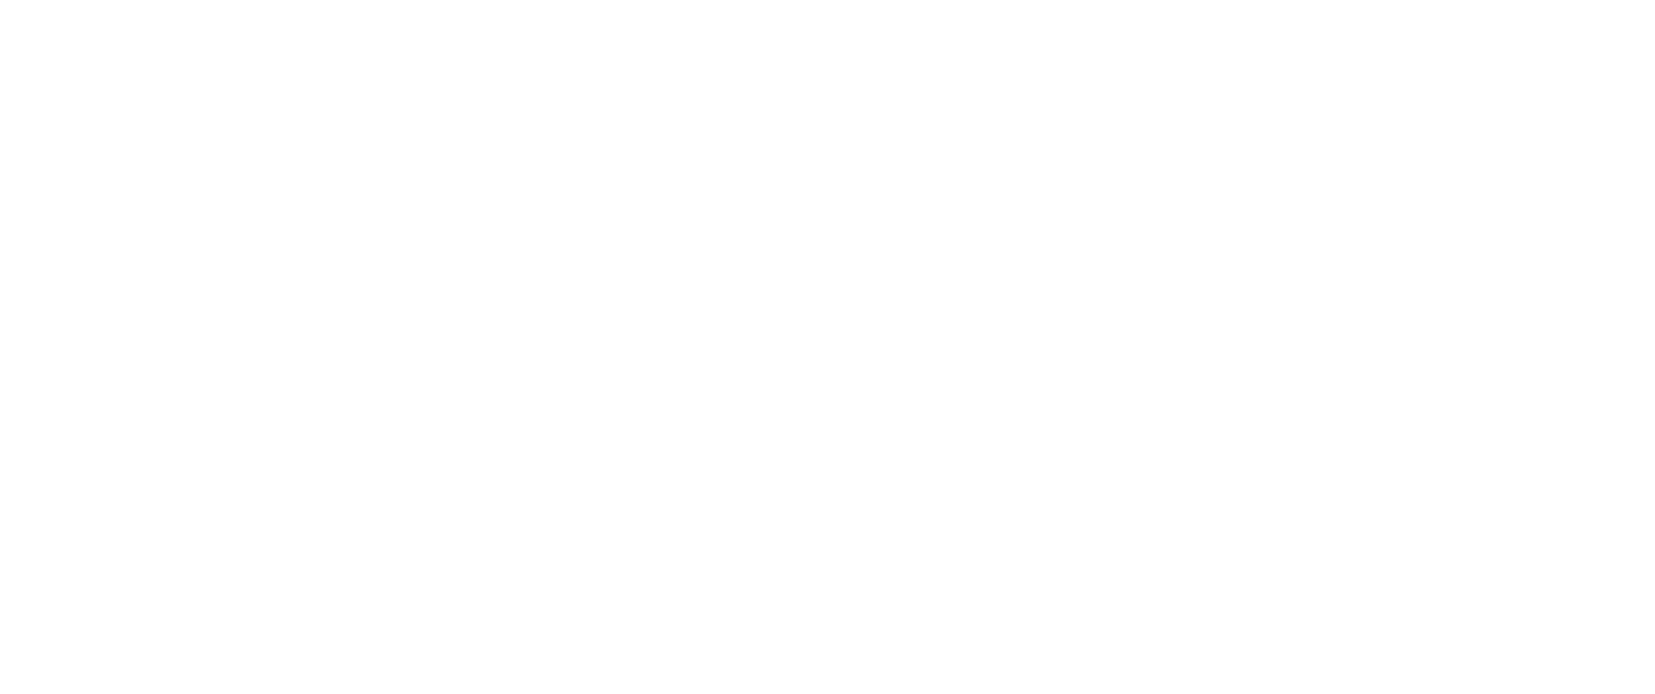 Clube de Vantagens